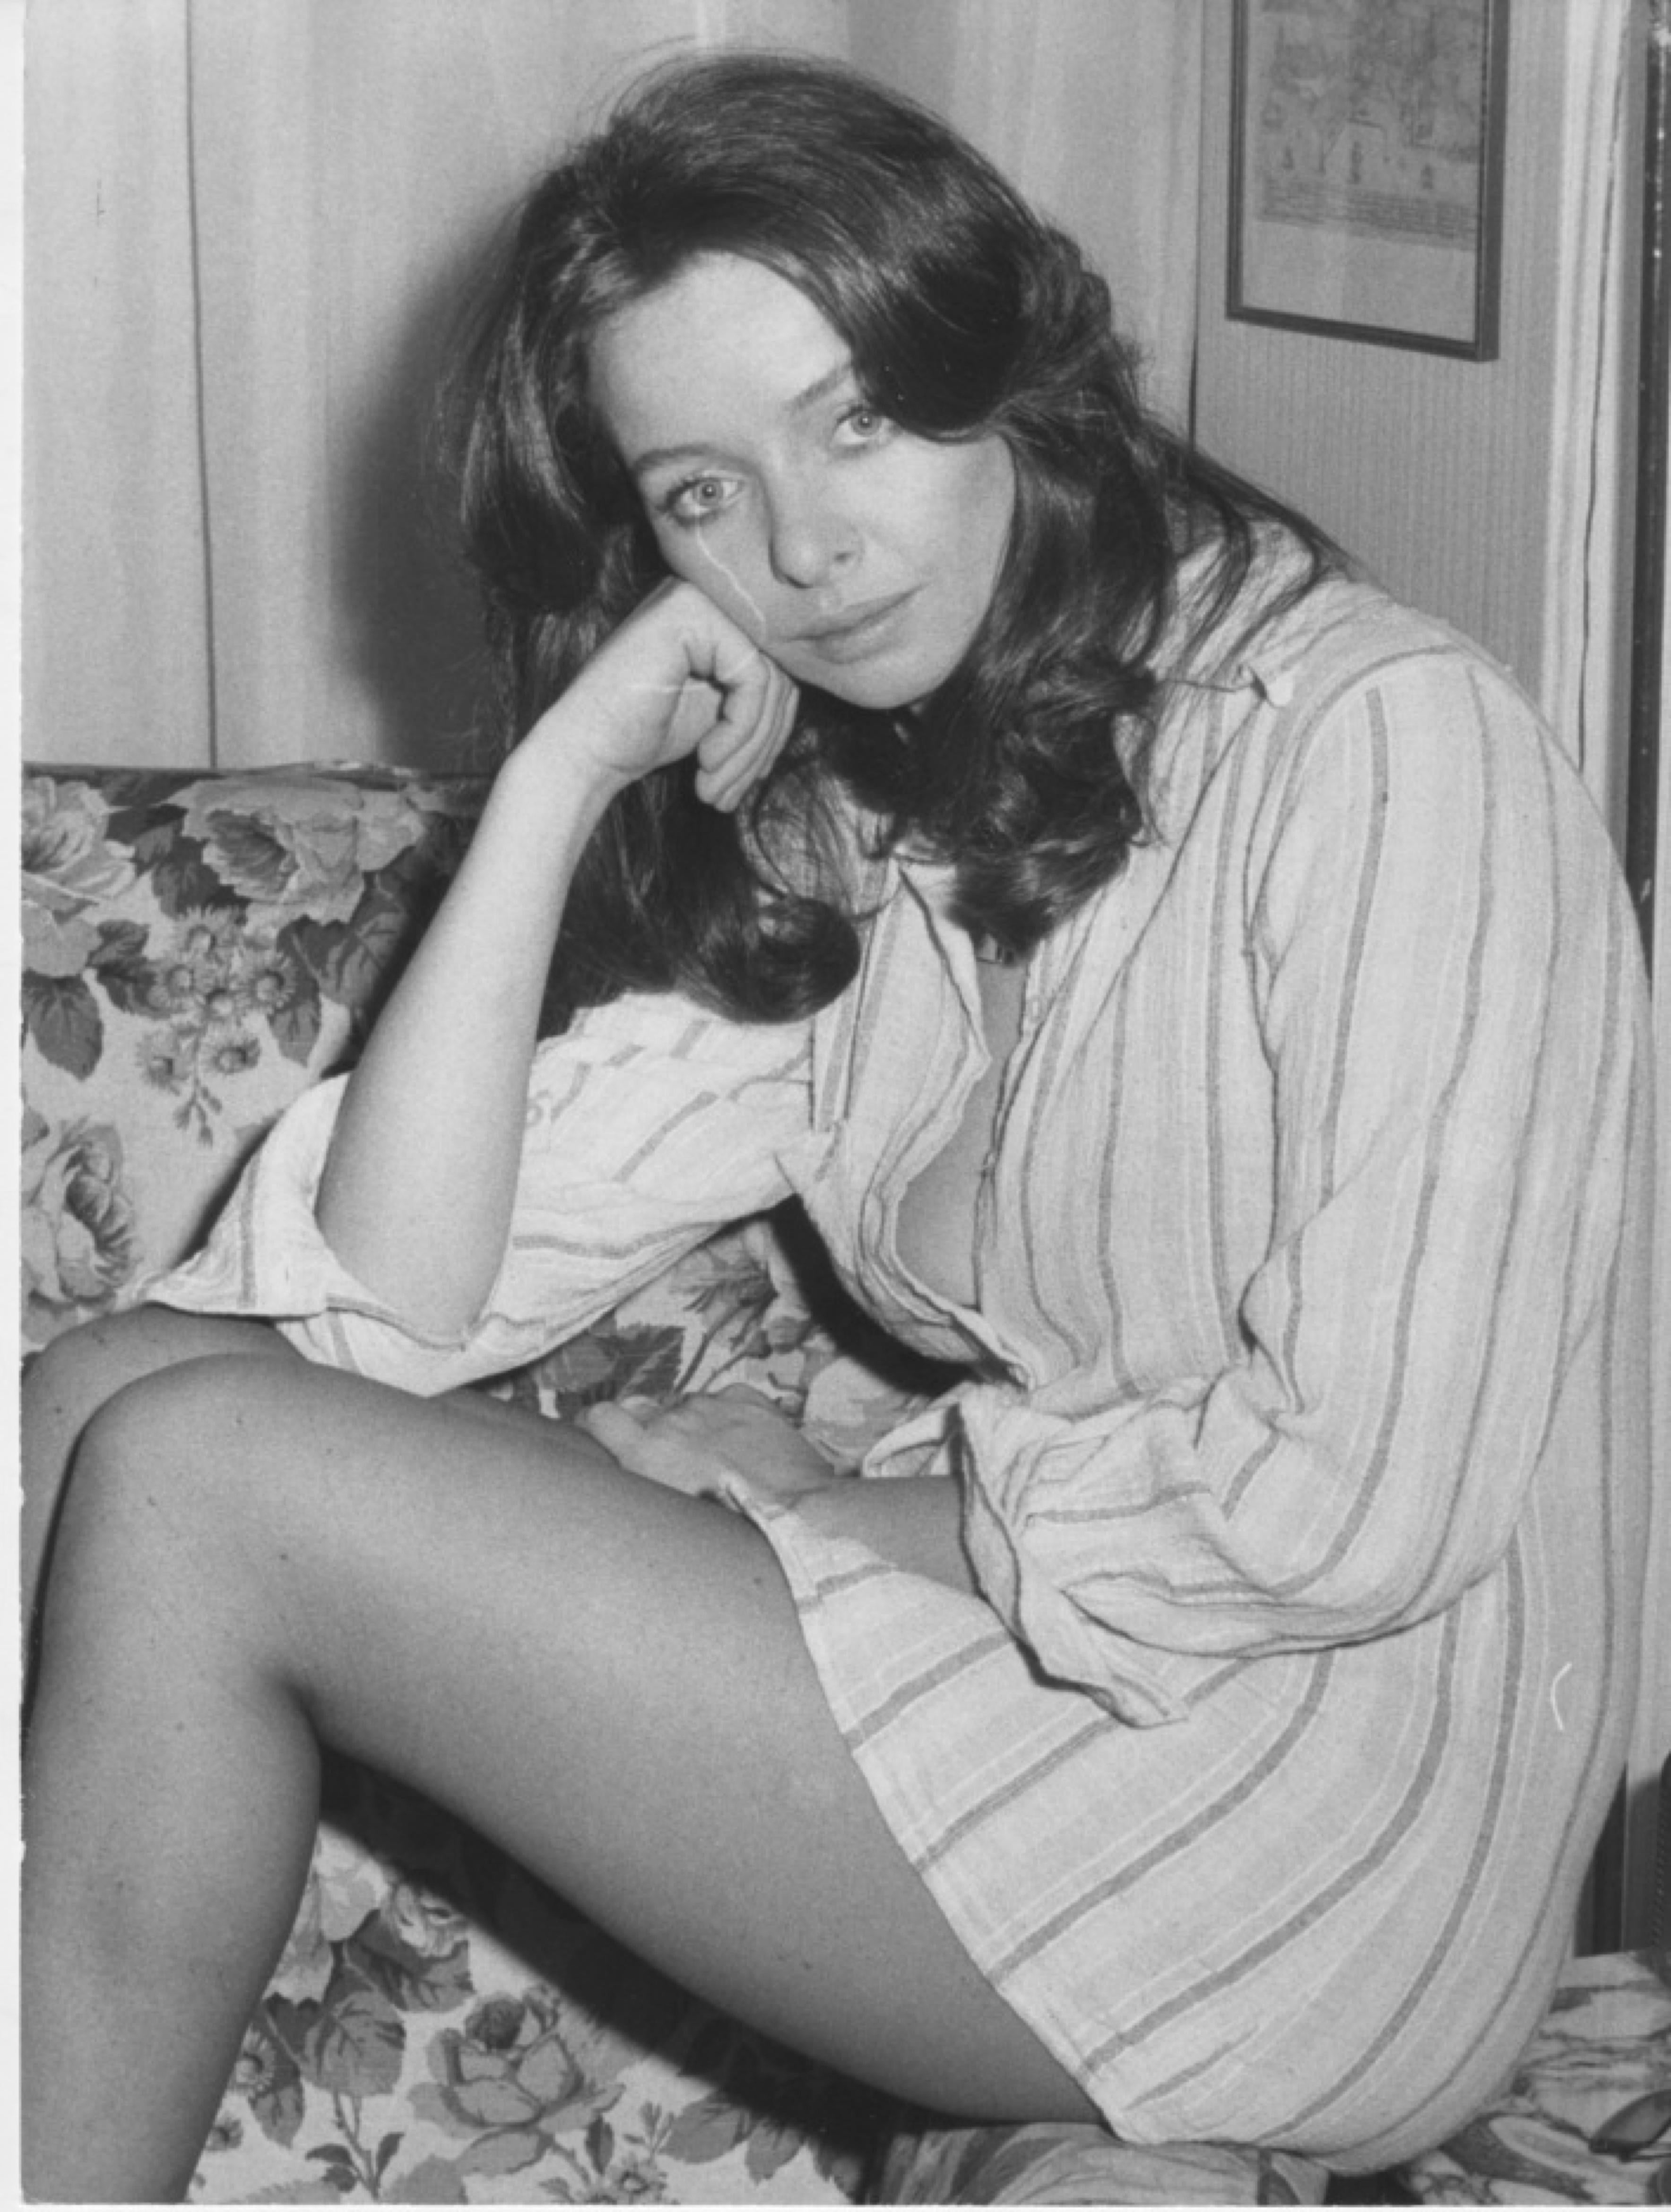 Portrait Photograph Unknown - Photo vintage de l'actrice italienne Enrica Bonaccorti - années 1970